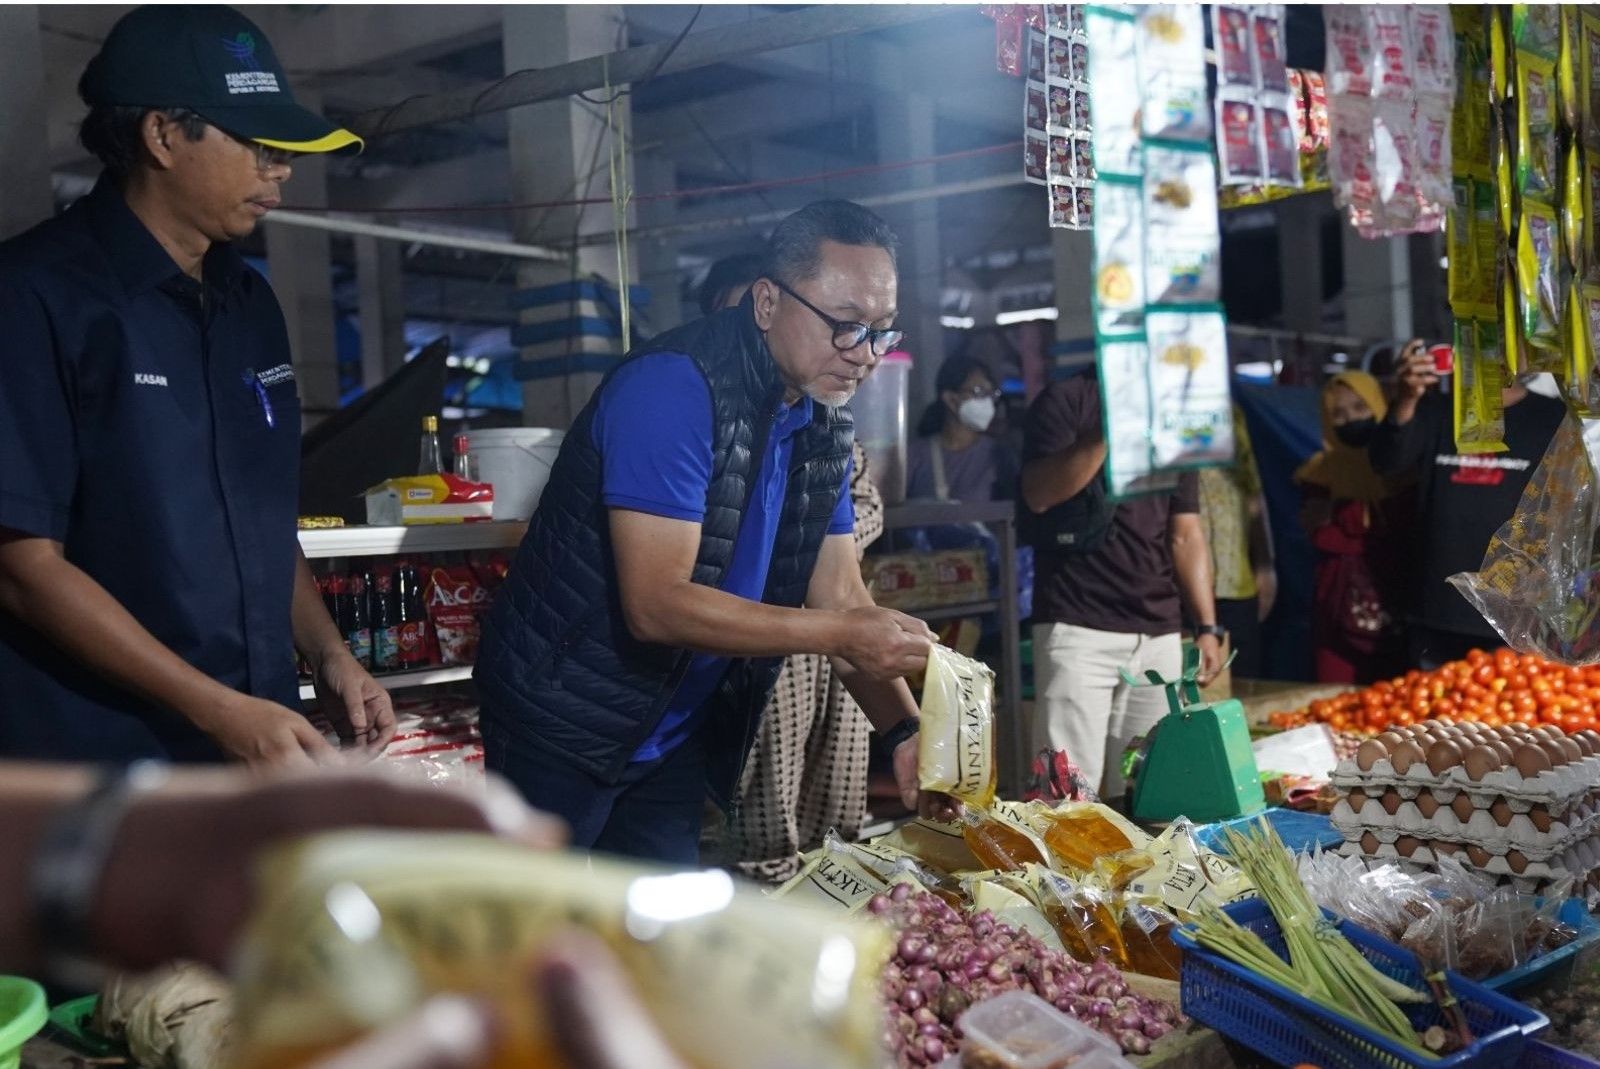 Menteri Perdagangan Zulkifli Hasan mengecek harga di Pasar Sentral Lama Mamuju Sulawesi Selatan beberapa waktu lalu.